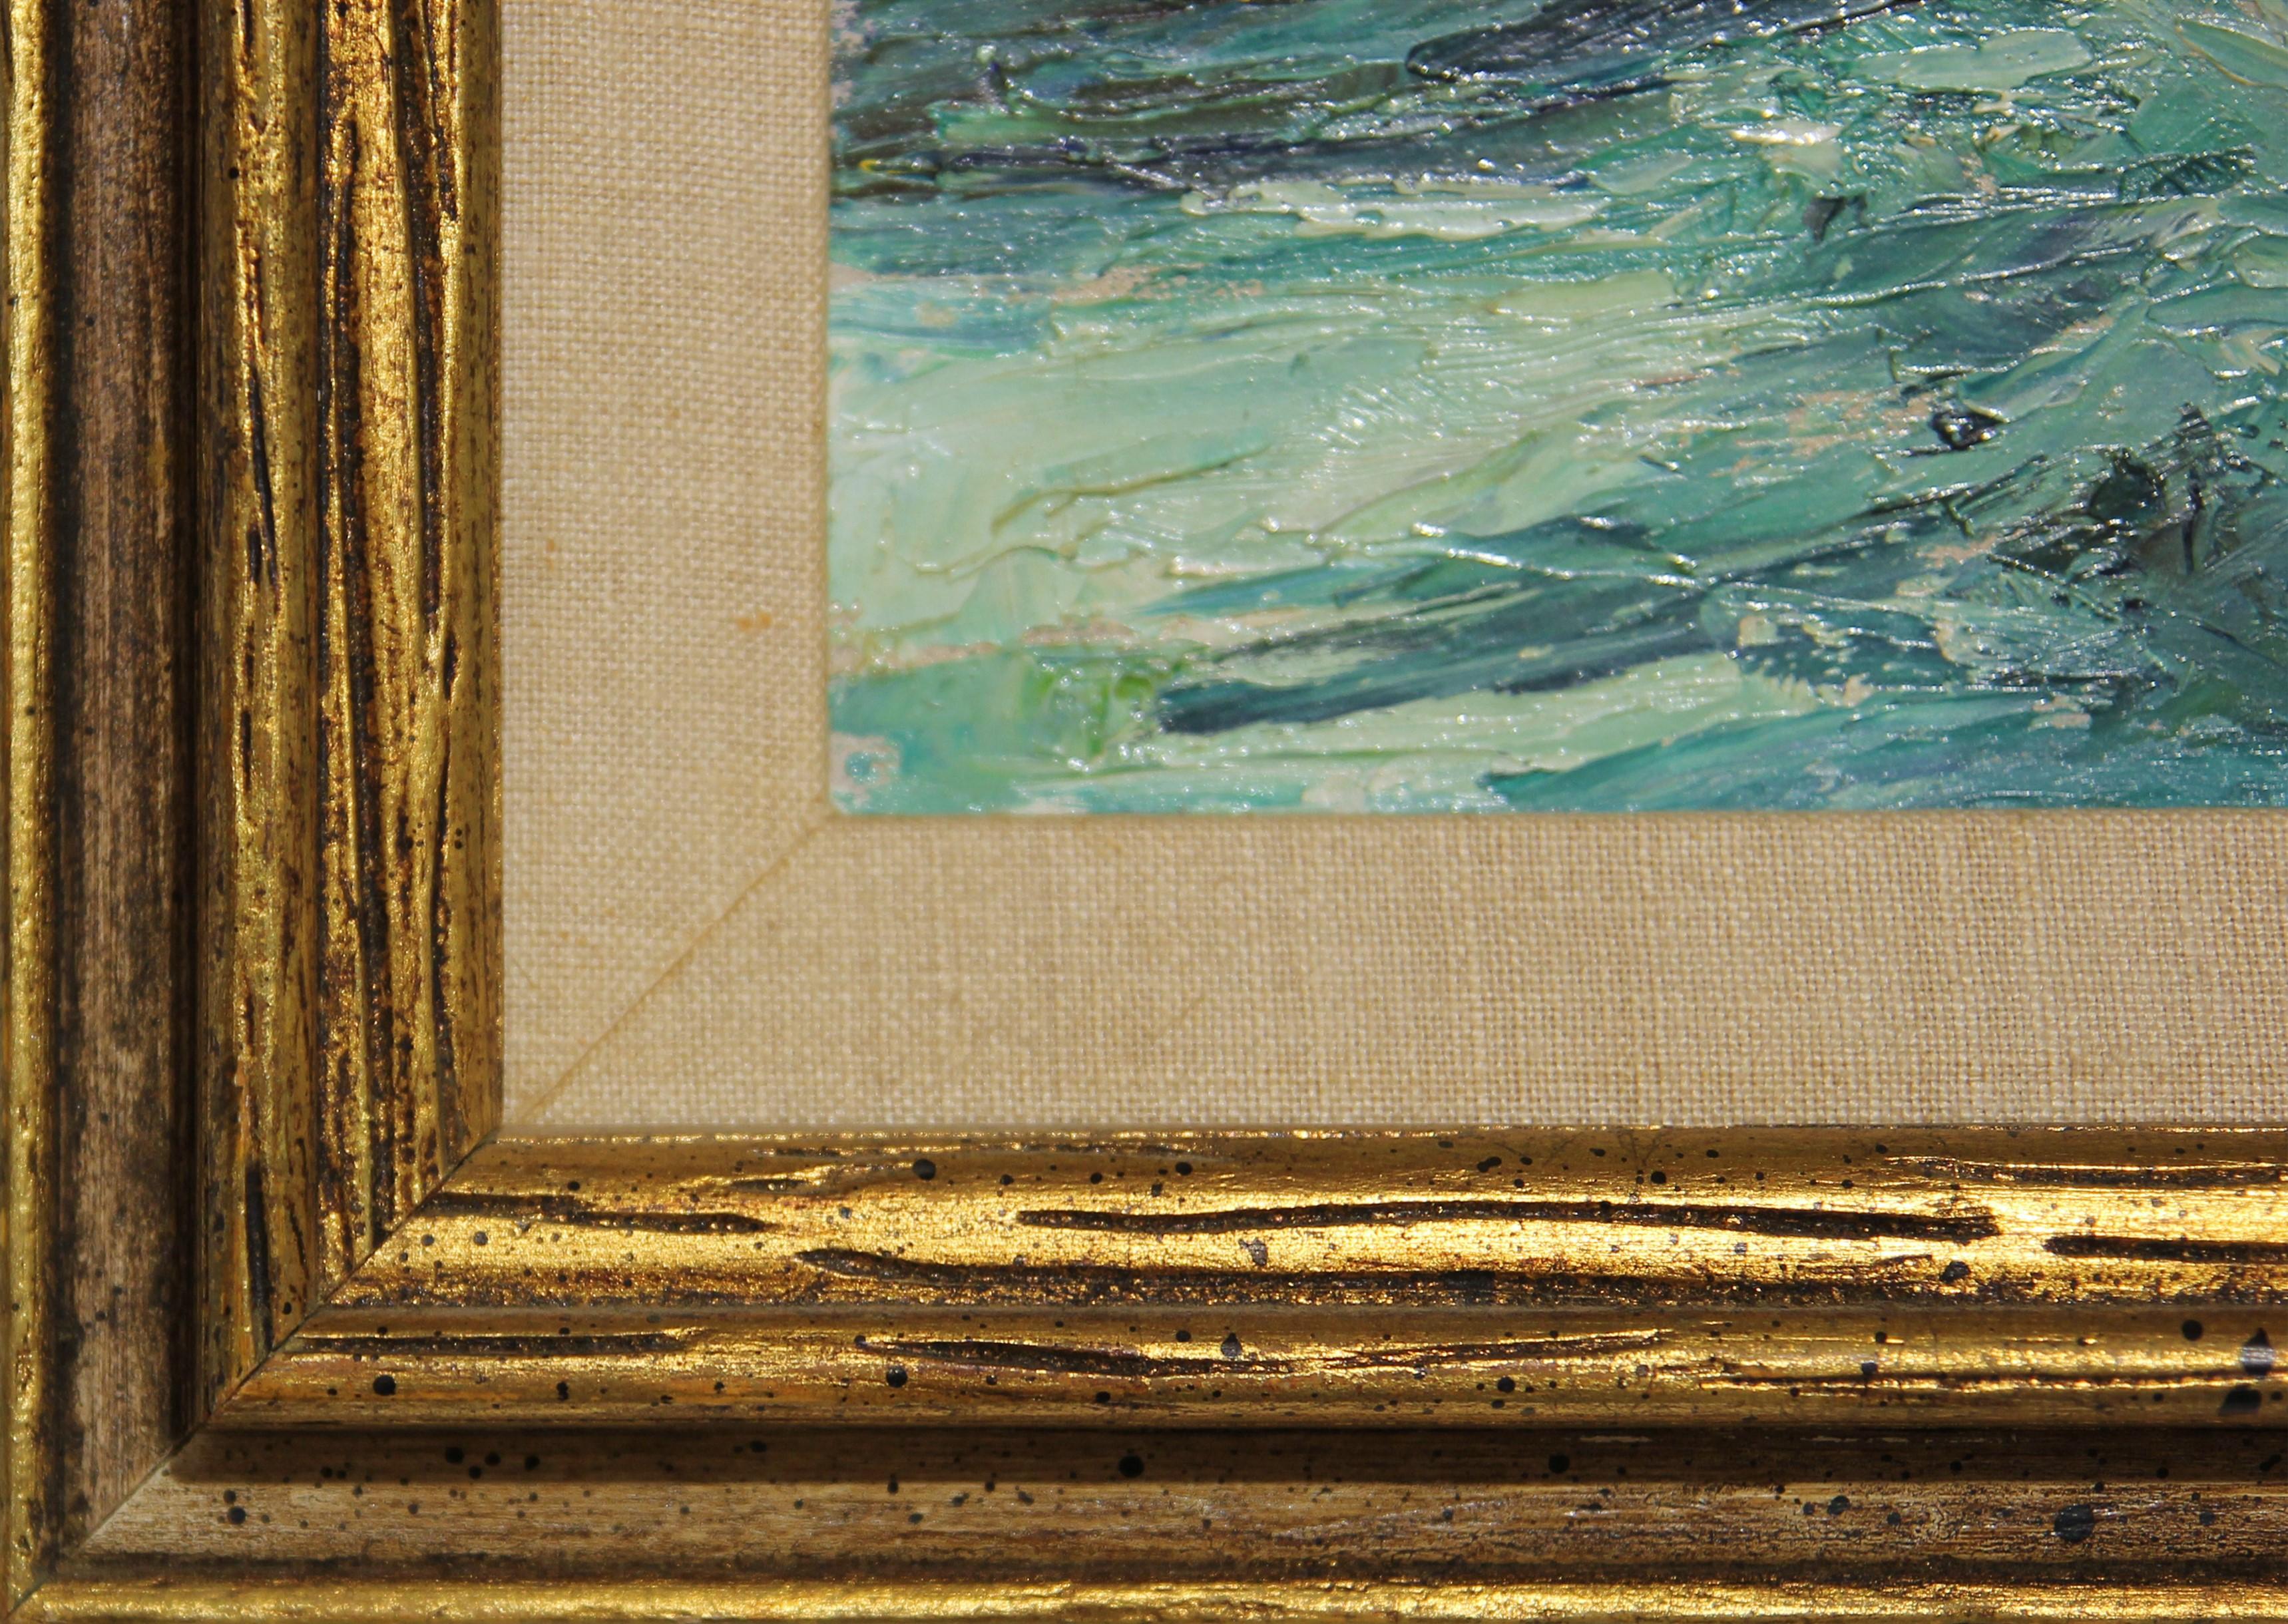 Paysage impressionniste de l'artiste et illustrateur de Houston, Texas, Charles Dixon Snowden. Paysage marin aux tons bleus représentant des vagues sombres de l'océan et trois pêcheurs sur un petit bateau en bois. Signé par l'artiste dans le coin